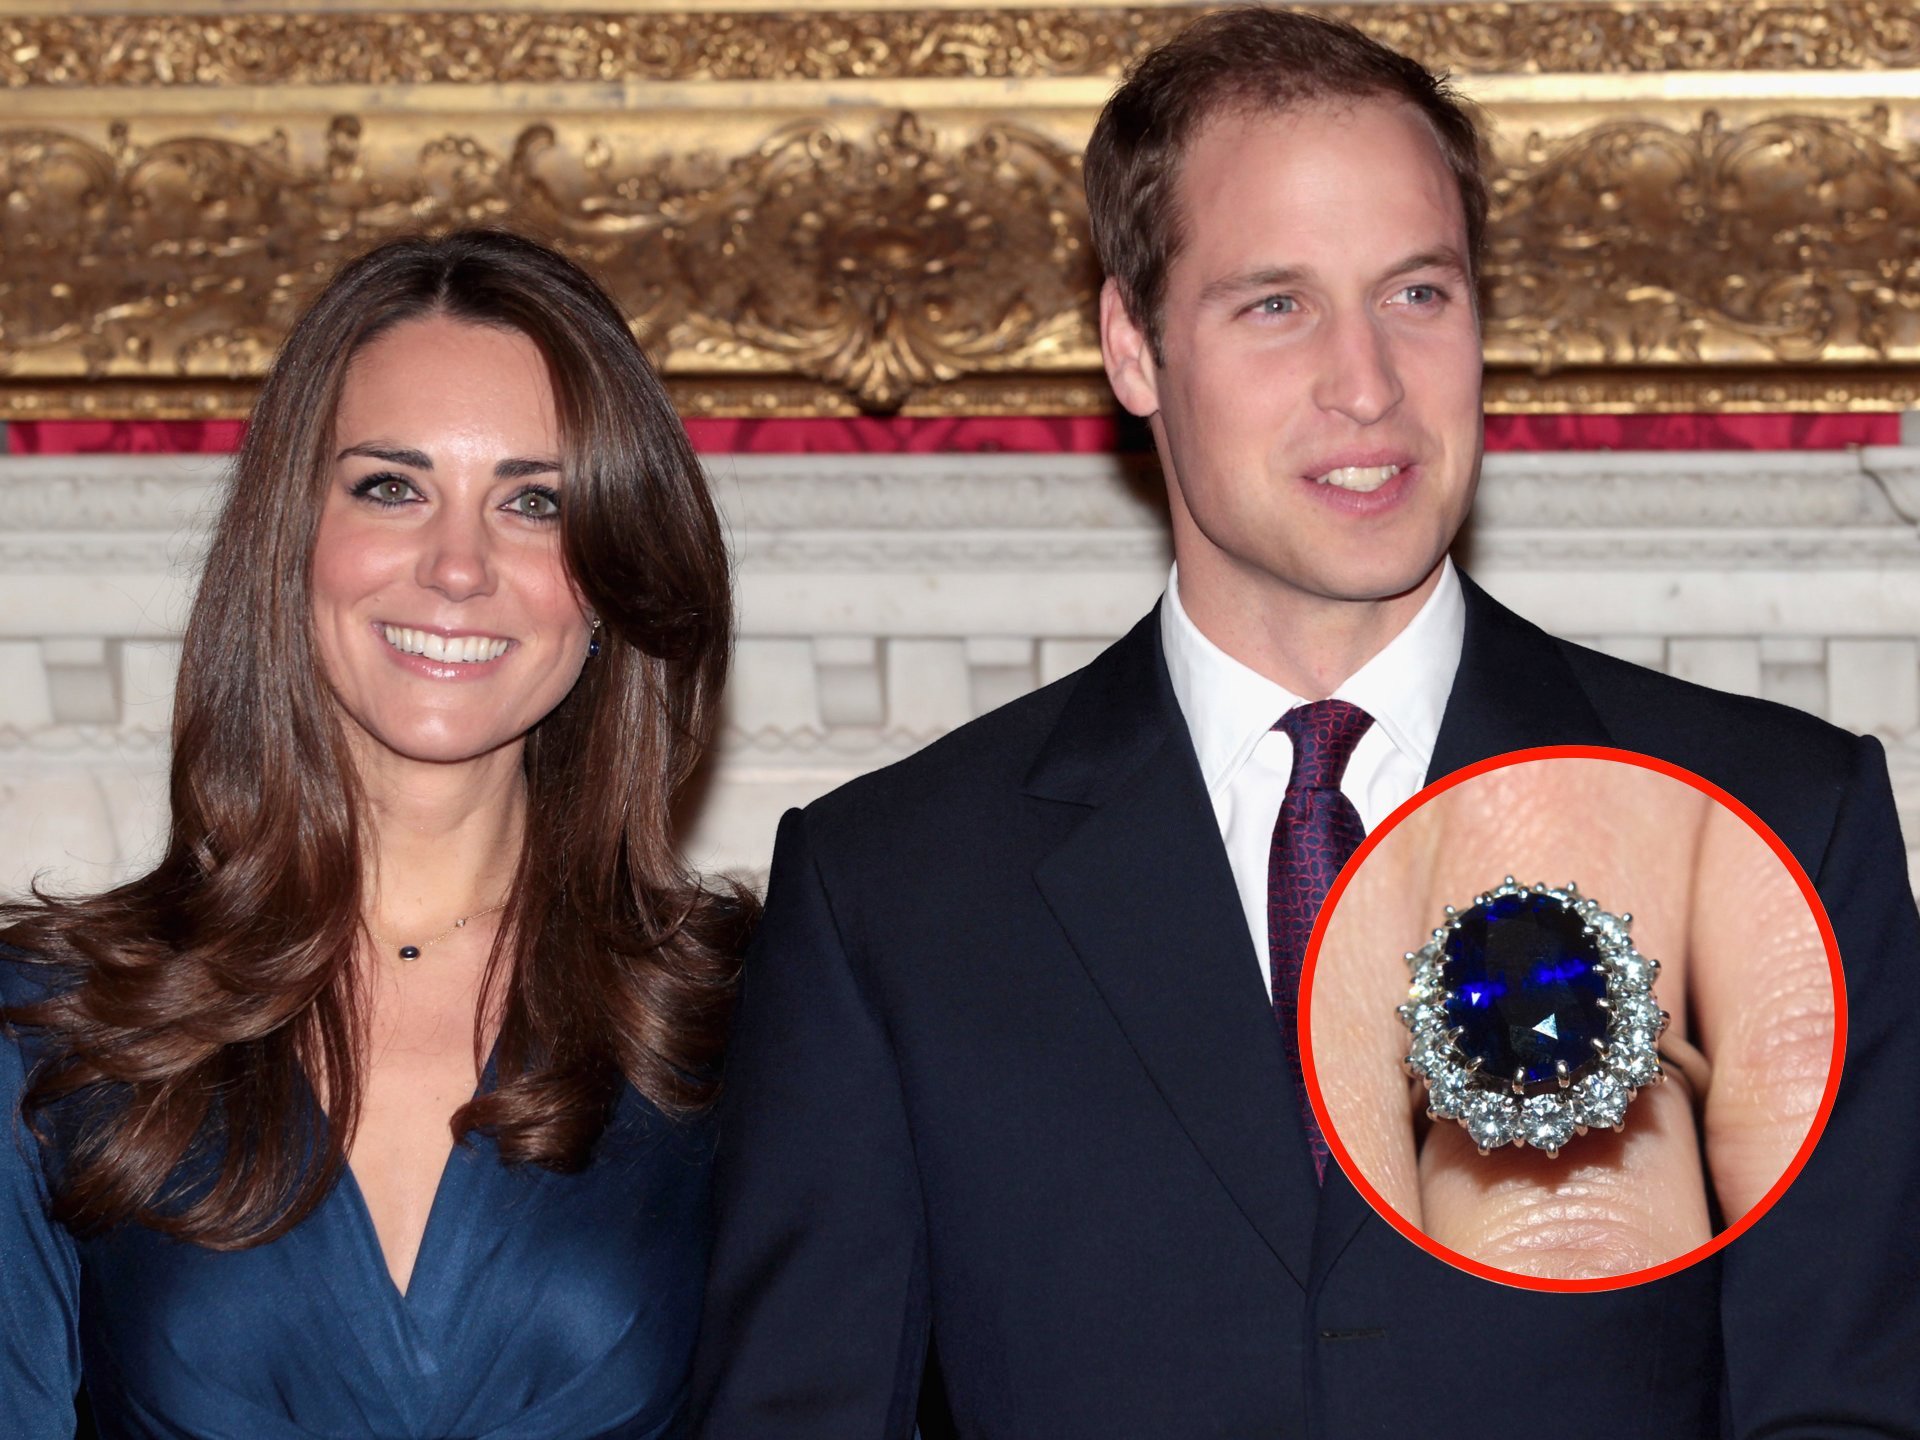   Chiếc nhẫn vô giá được truyền từ Công nương Diana đến Công nương Kate - Nguồn: Getty Images  